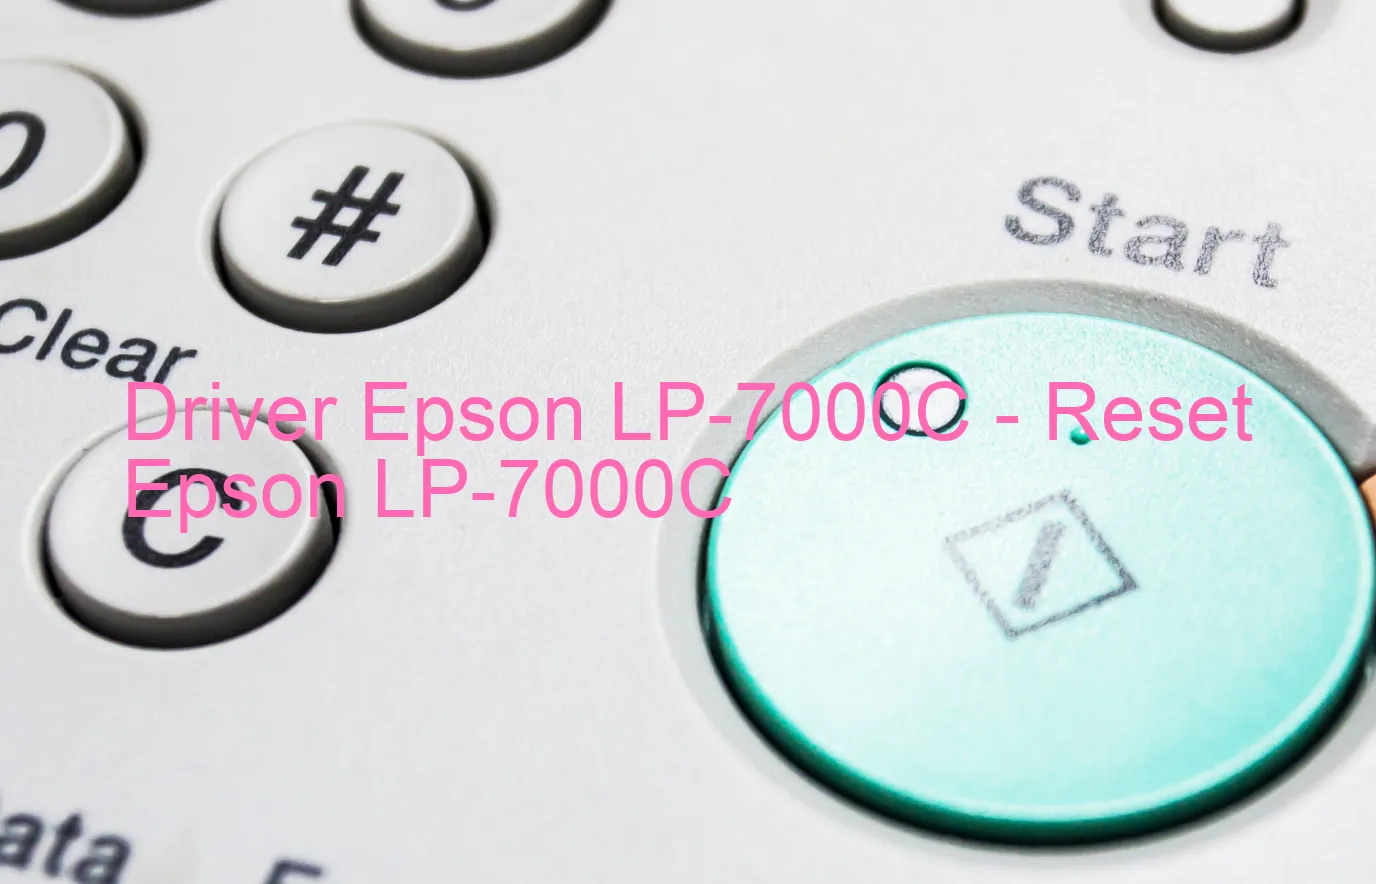 Epson LP-7000Cのドライバー、Epson LP-7000Cのリセットソフトウェア